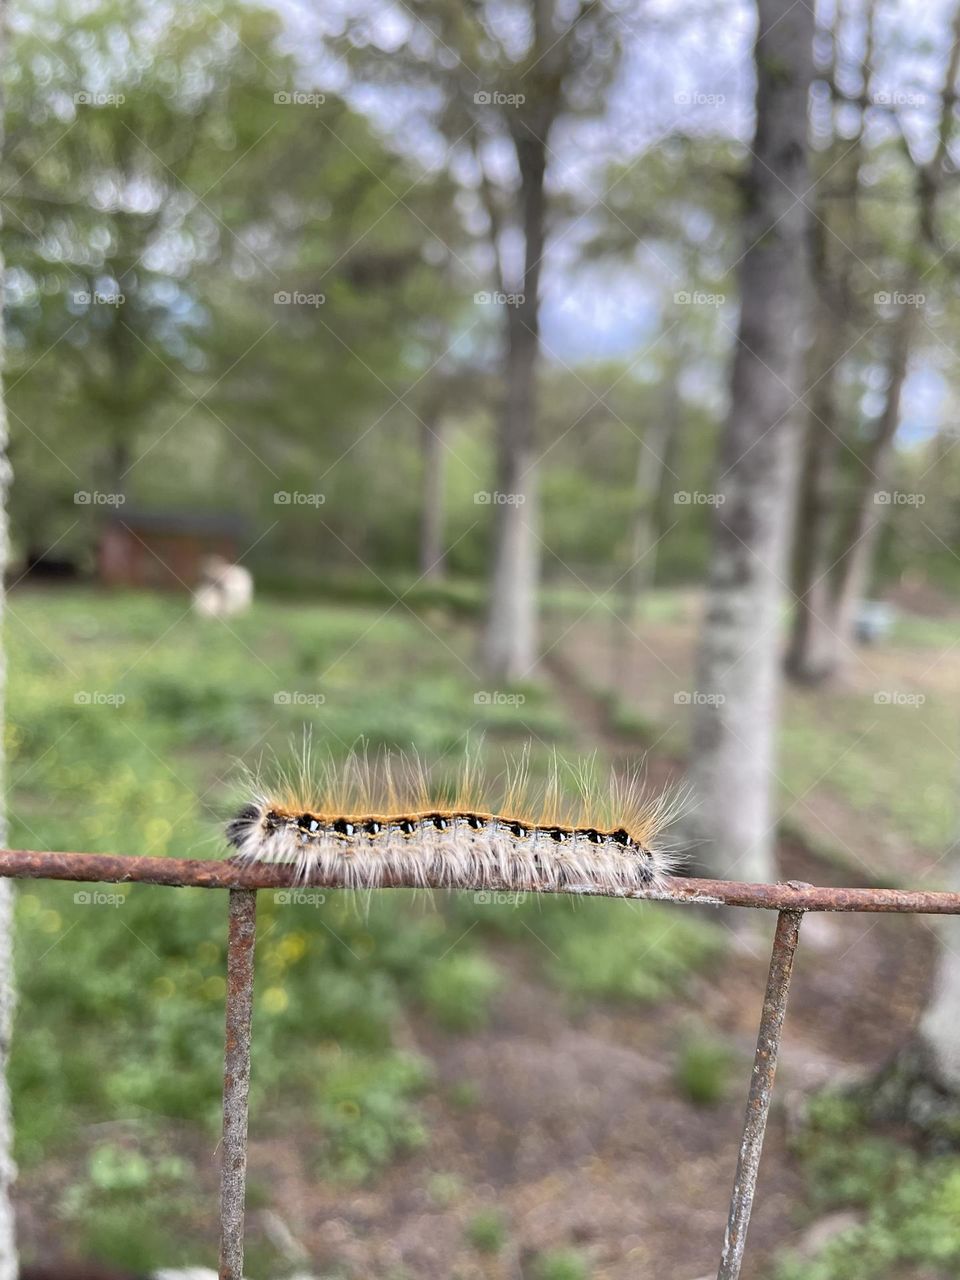 A small fuzzy caterpillar 🐛